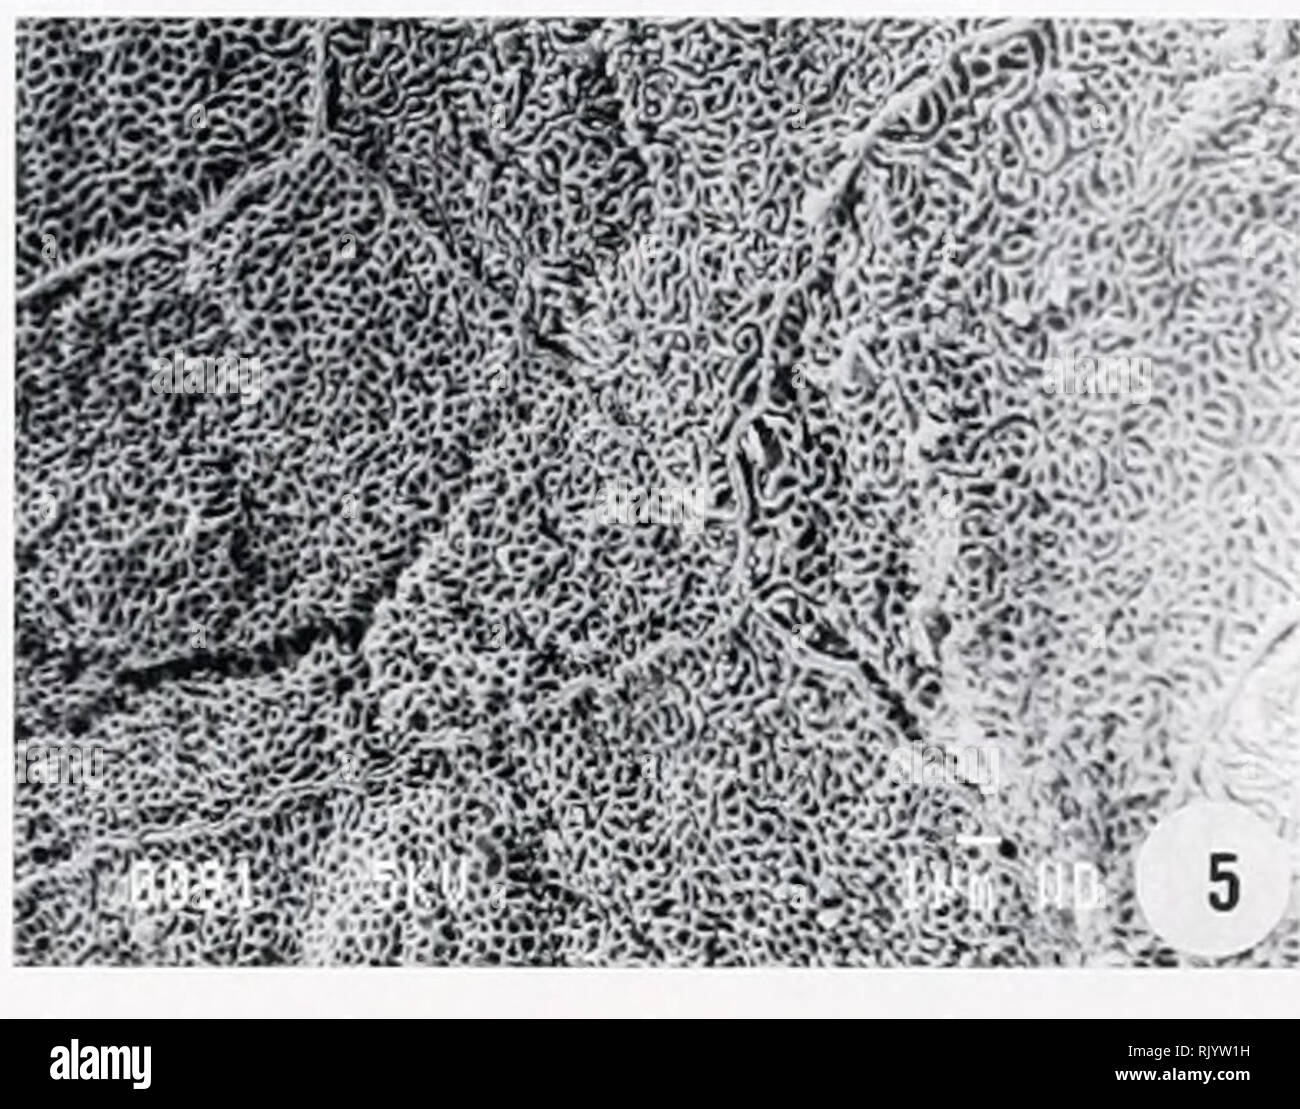 . Herpetological asiatico ricerca. Rettili -- Asia periodici; Anfibi -- Asia periodici. - "I FIG. 4. Squamosal cellule con breve spinulae, vista ventrale, prossimale del pad del dito III (Batrachylodes vertebralis, MNHN 1970.1407, Isole Salomon).. FIG. 5. Squamosal cellule con microridges, vista ventrale, al di fuori della scanalatura circonferenziale del dito HI (Amolops marmoratus, MNHN 1988.2787, Nepal). r "V* '.J* tf"SS. Si prega di notare che queste immagini vengono estratte dalla pagina sottoposta a scansione di immagini che possono essere state migliorate digitalmente per la leggibilità - Colorazione e aspetto di questi illustrat Foto Stock